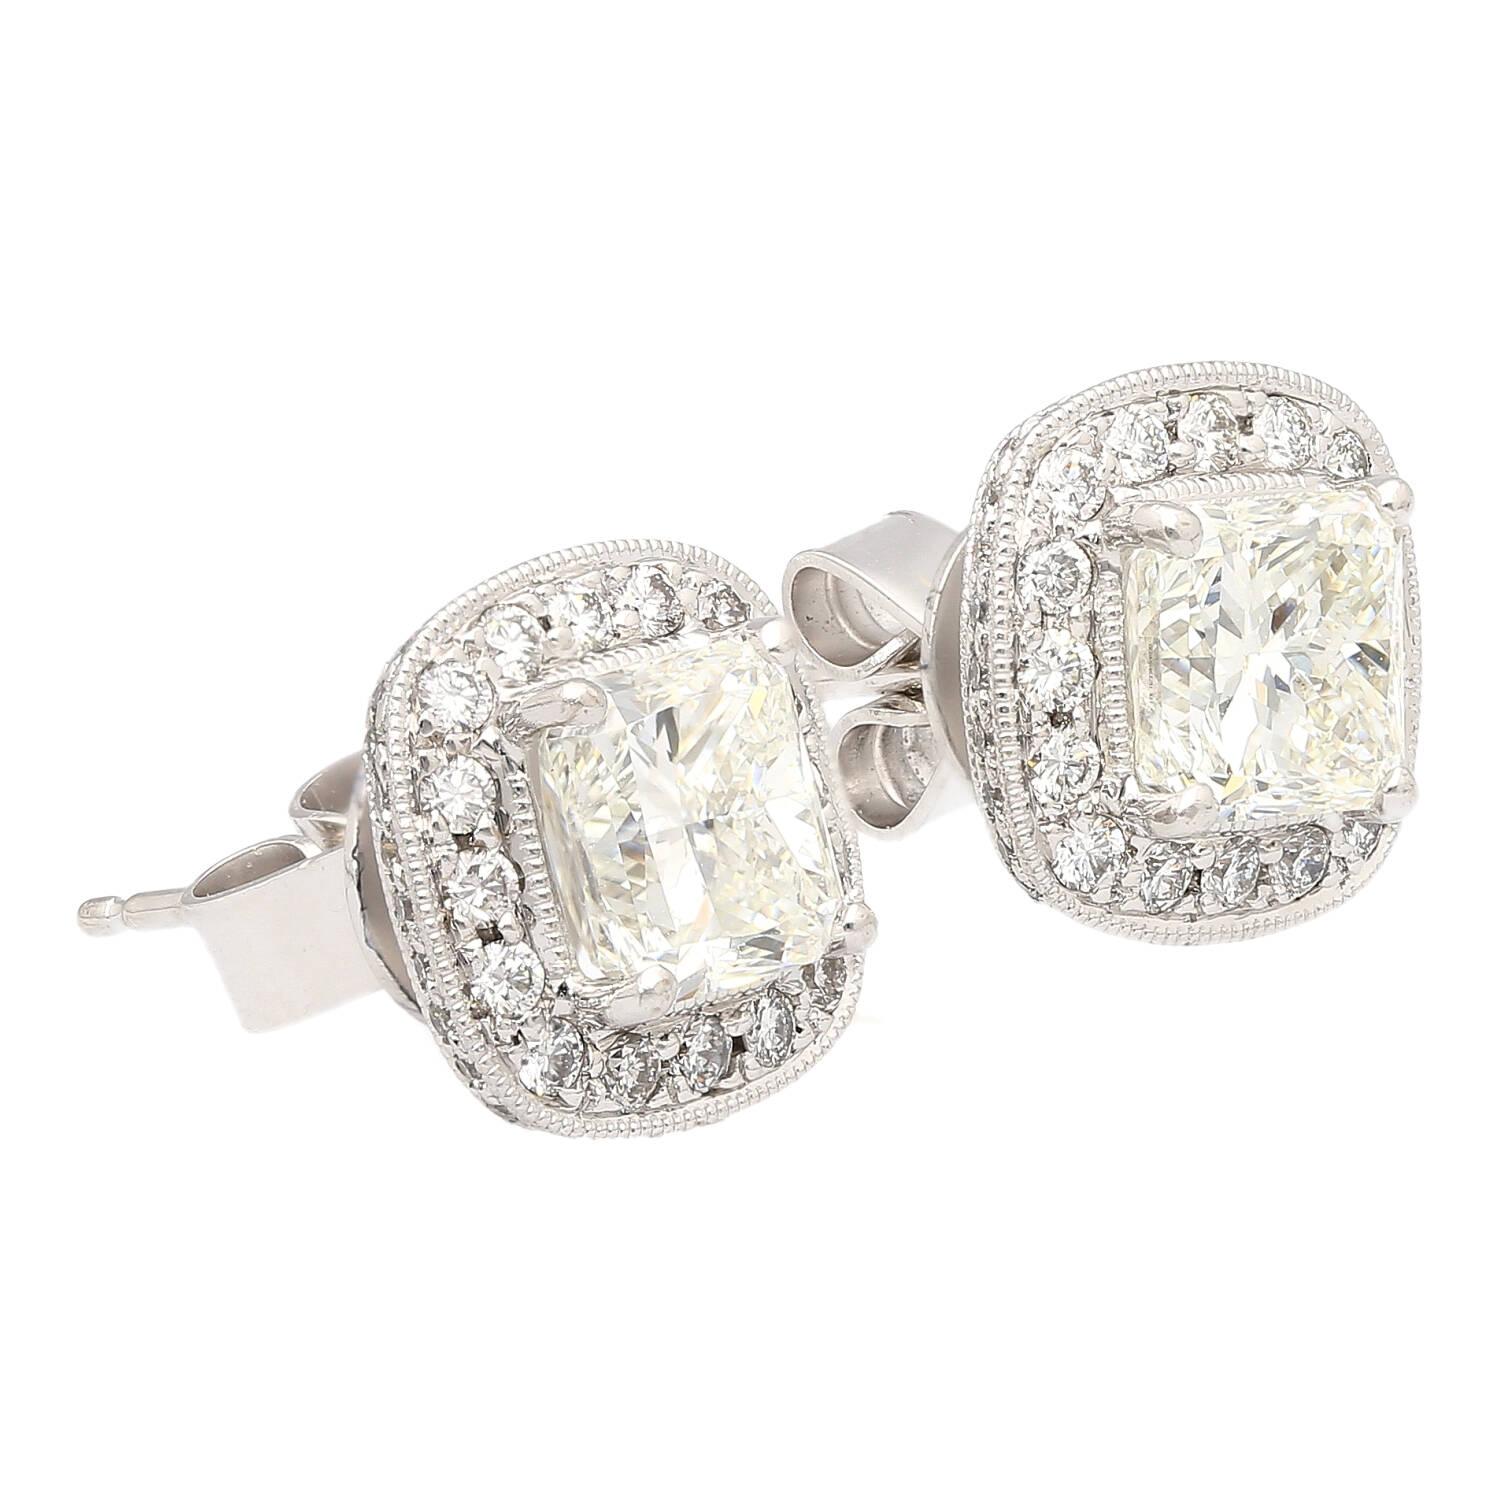 Boucles d'oreilles composées de diamants naturels de taille radieuse de 3 carats au total. Serti en or blanc 18k d'un halo de diamants de taille ronde et d'une fermeture push-back. Avec un diamant de 1,50 carat certifié par la GIA et de 1,51 carat